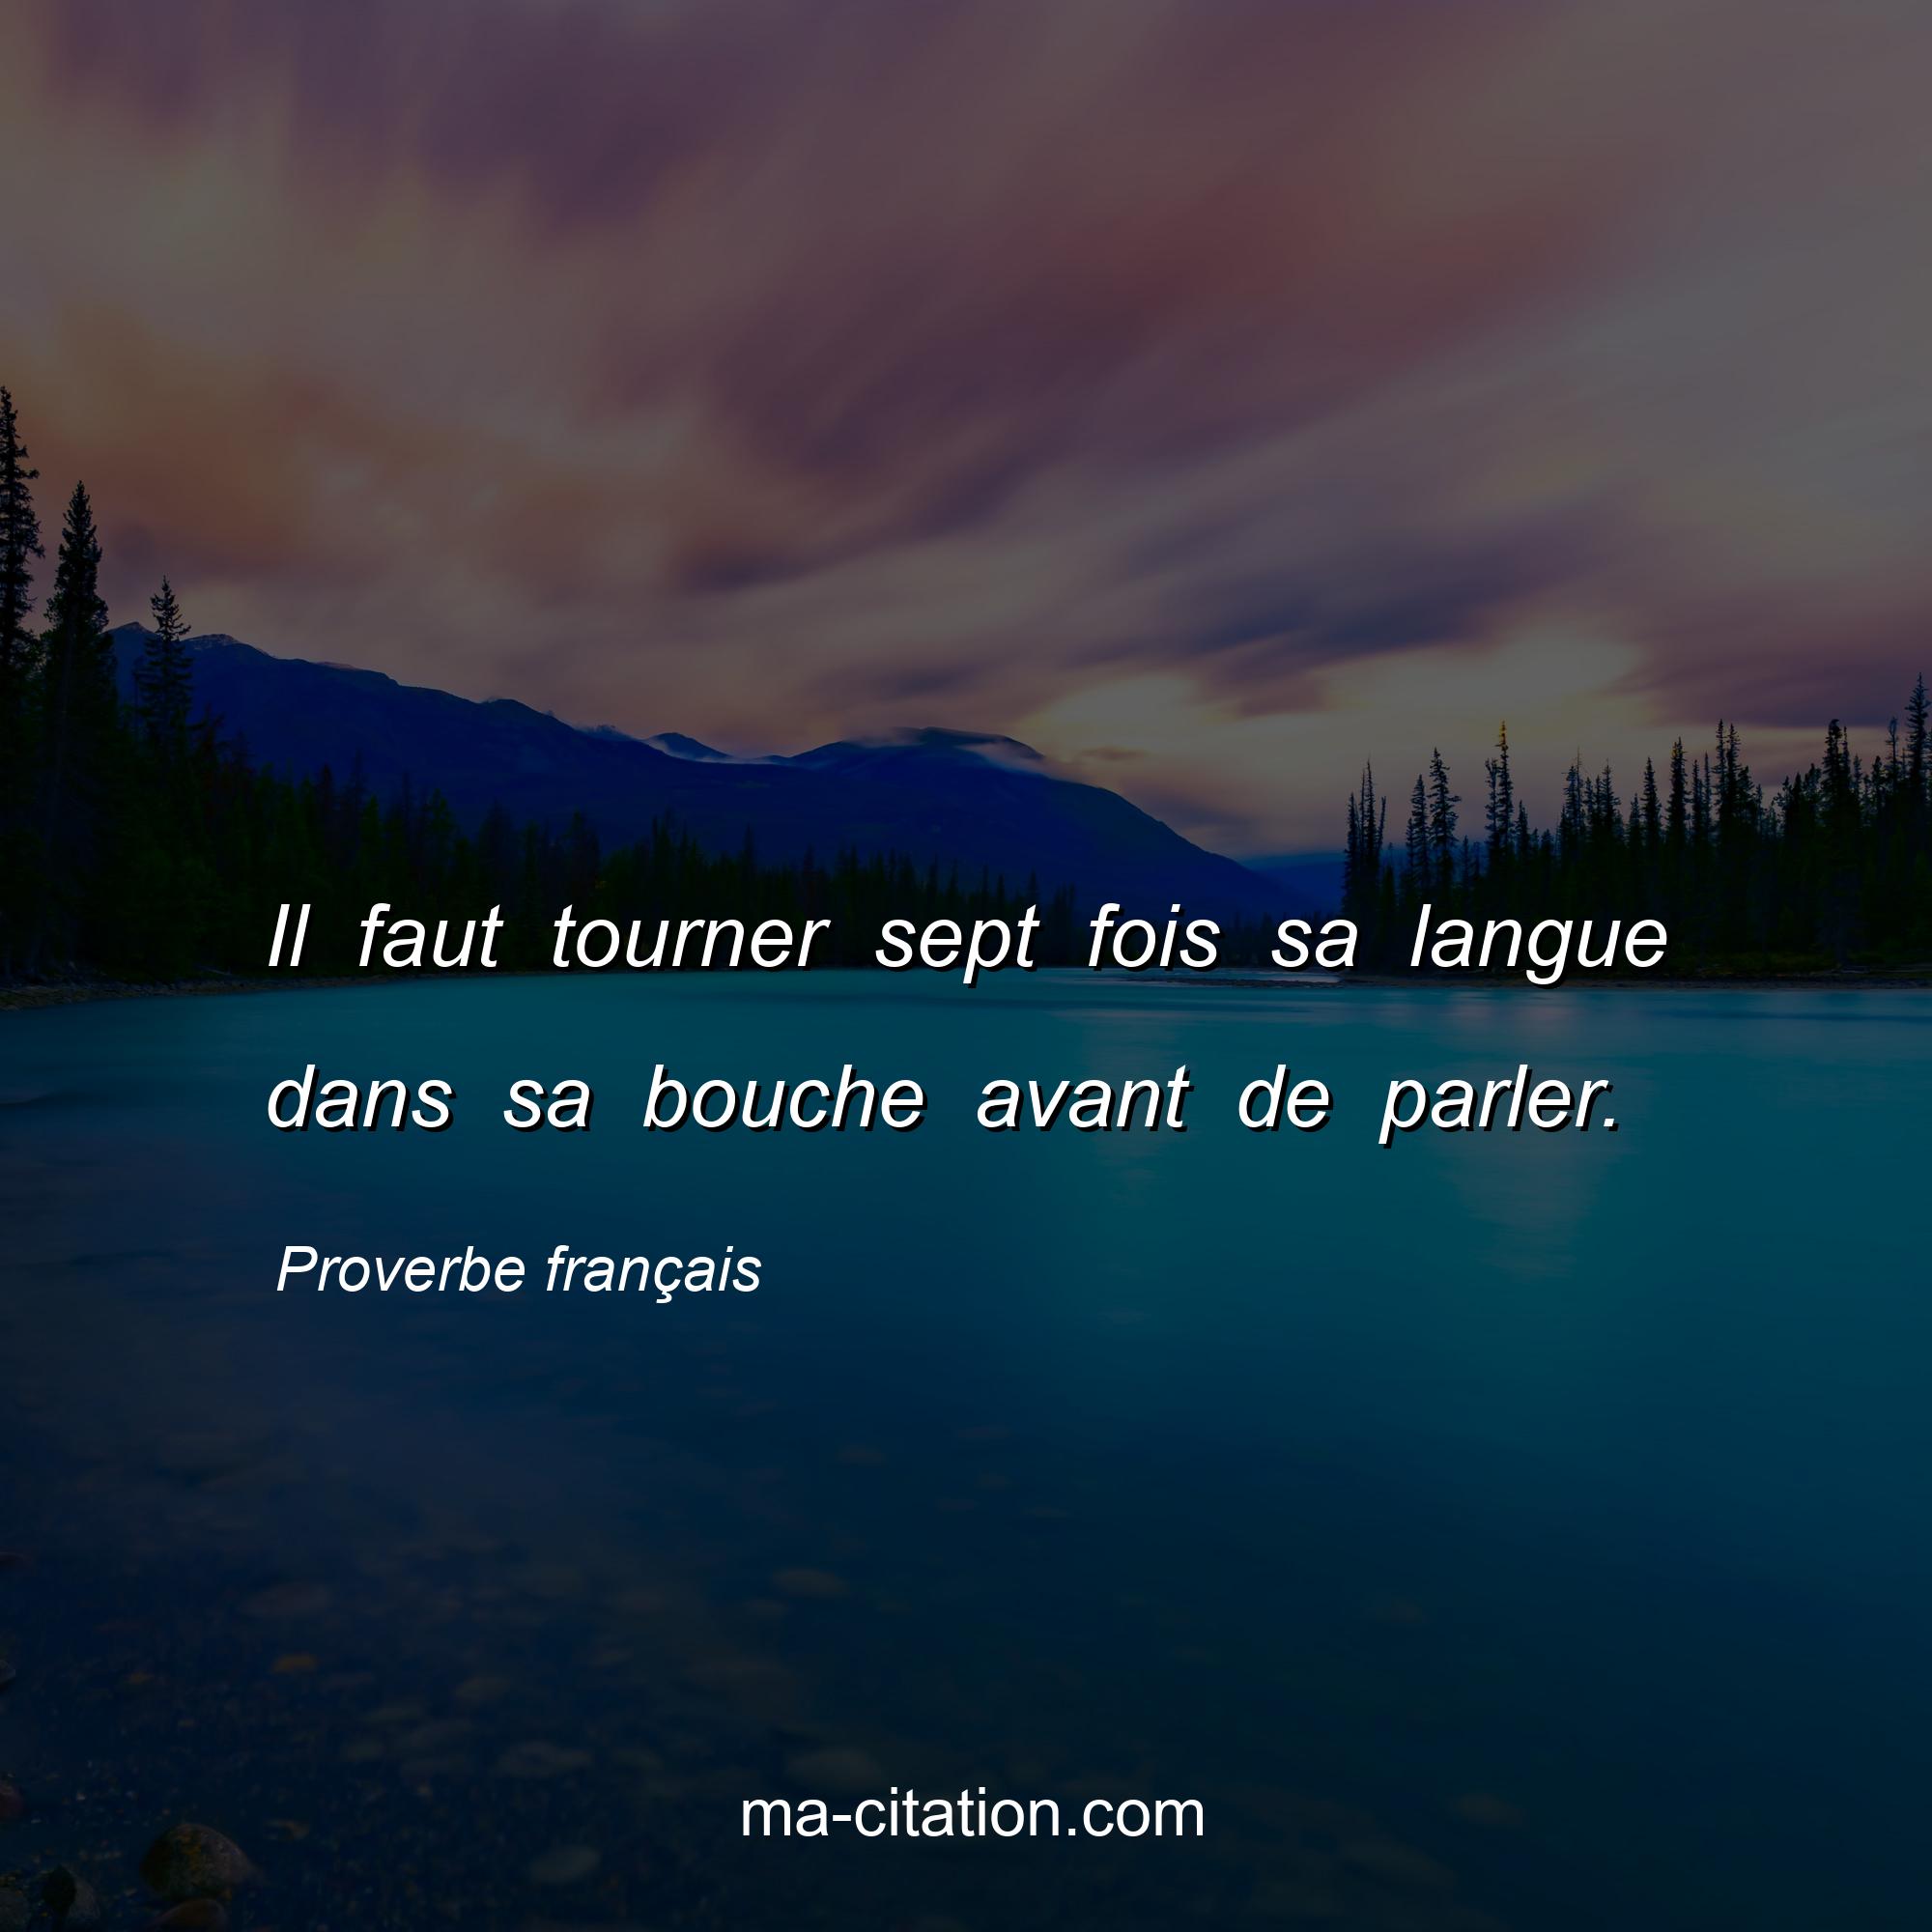 Proverbe français : Il faut tourner sept fois sa langue dans sa bouche avant de parler.